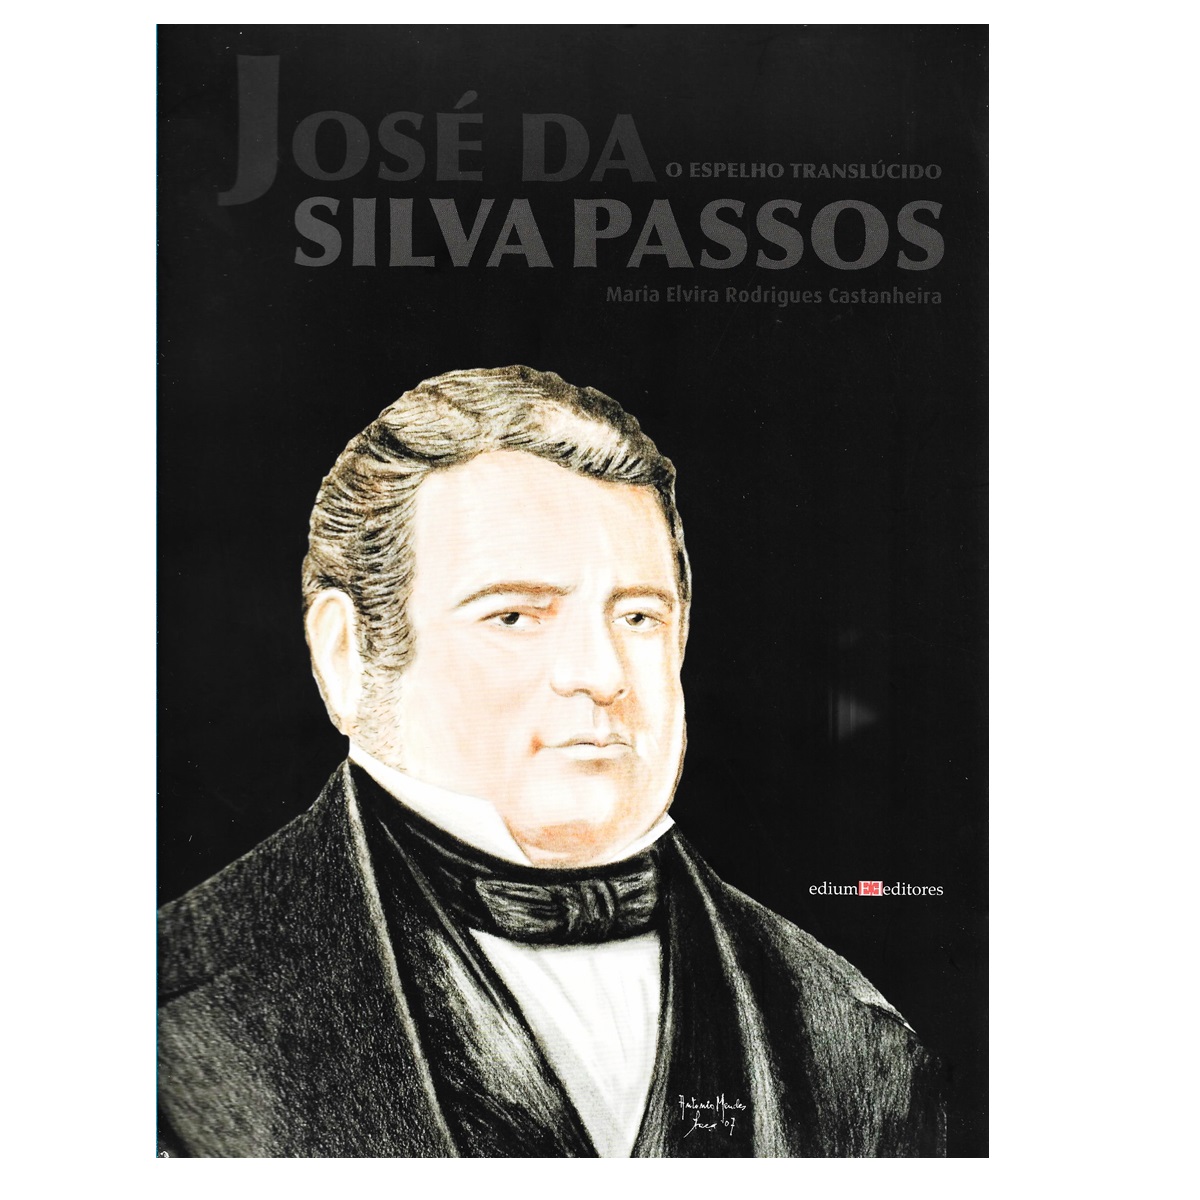 José da Silva Passos. 